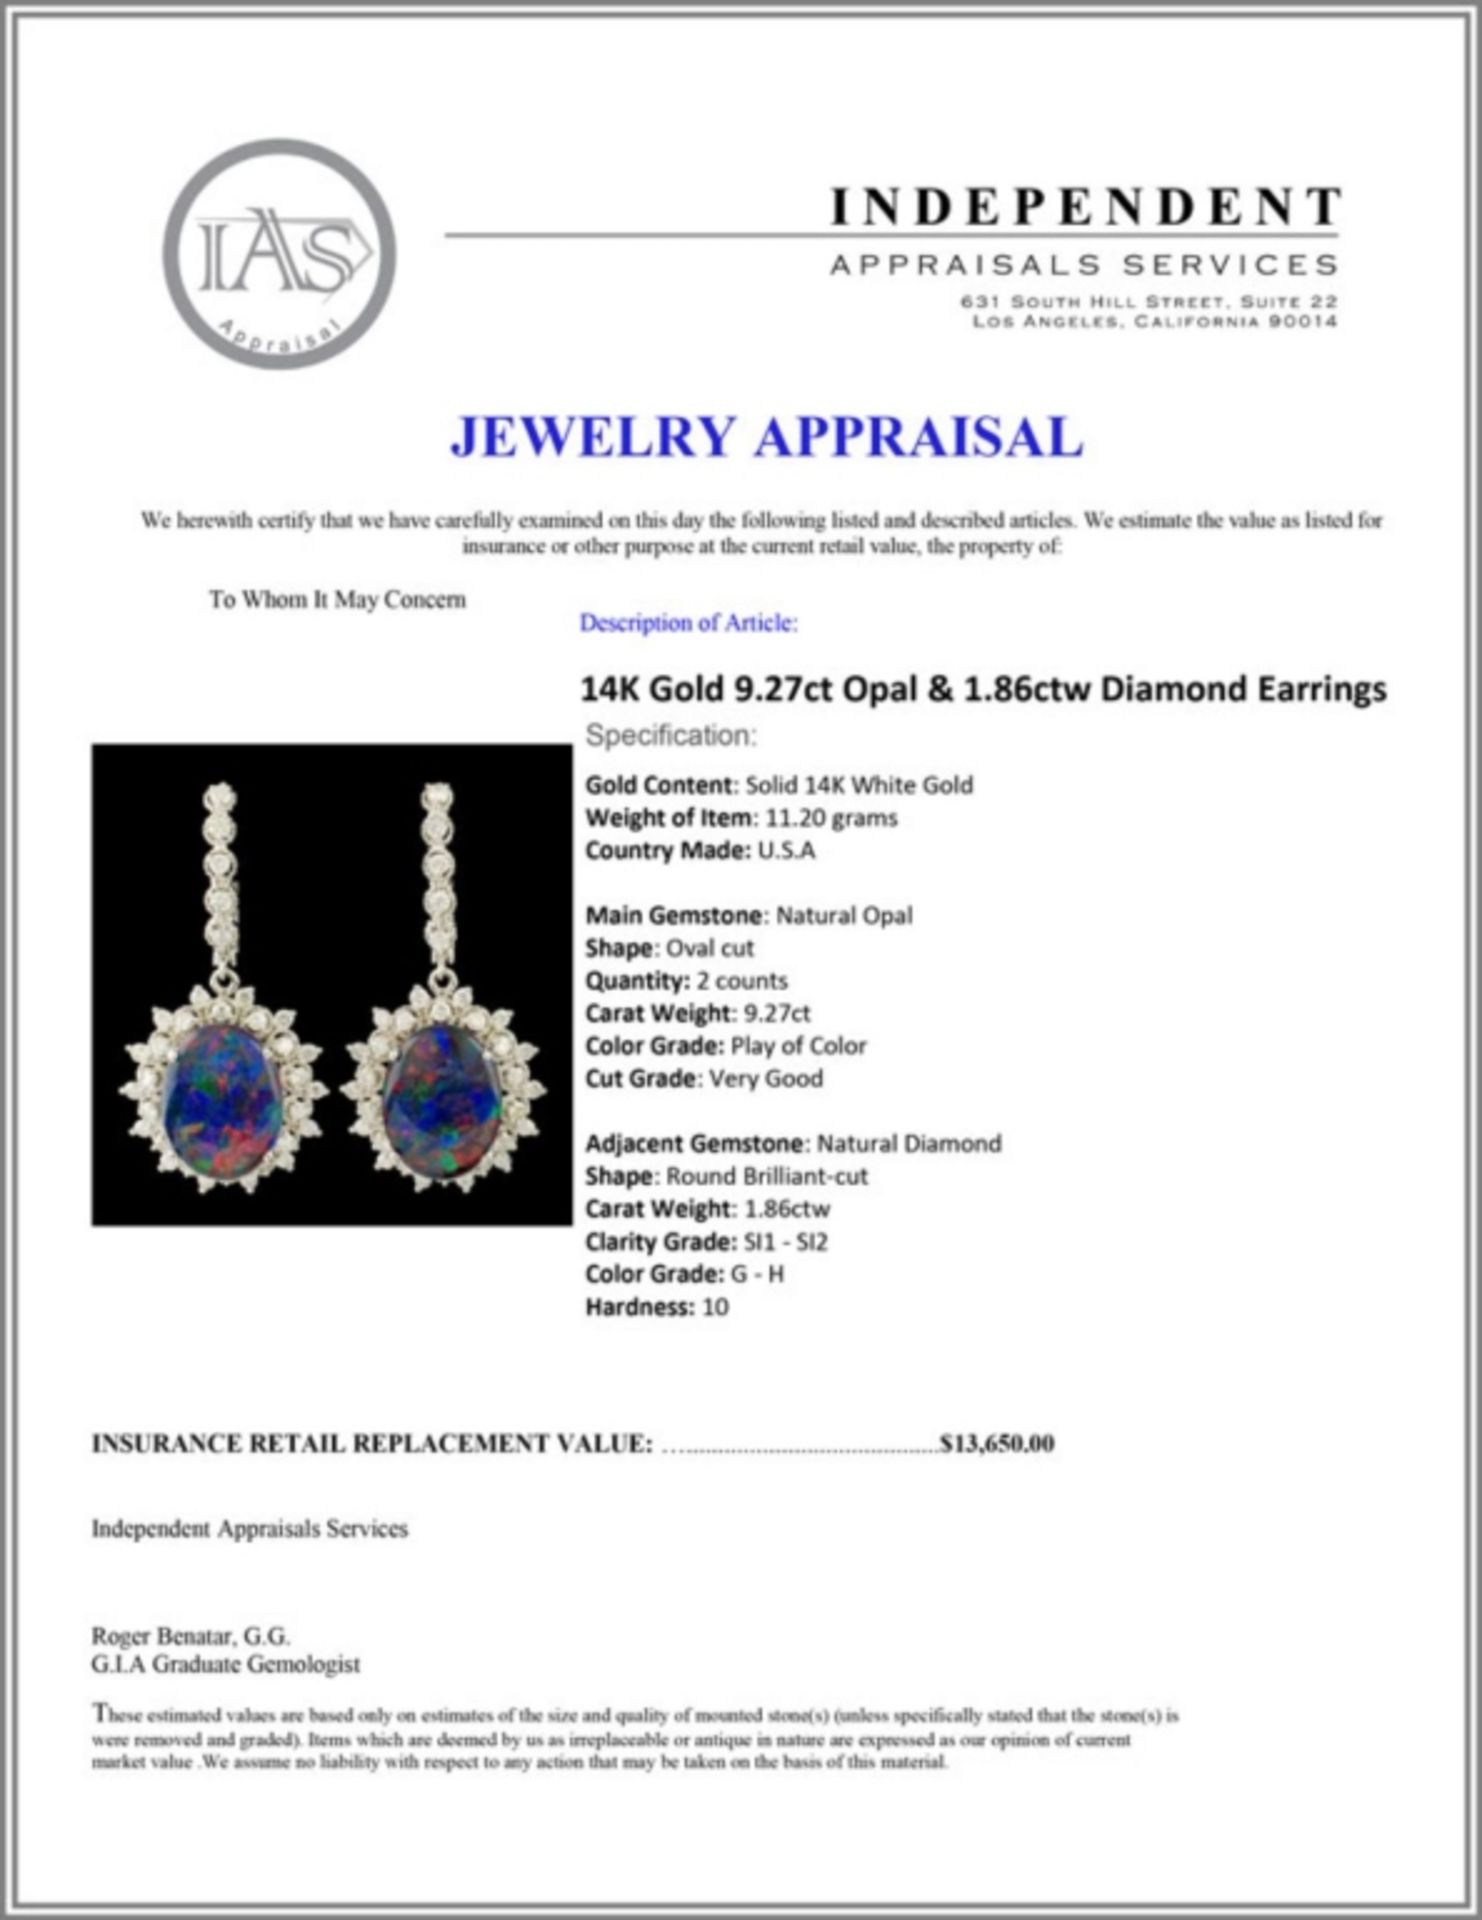 14K Gold 9.27ct Opal & 1.86ctw Diamond Earrings - Image 3 of 3